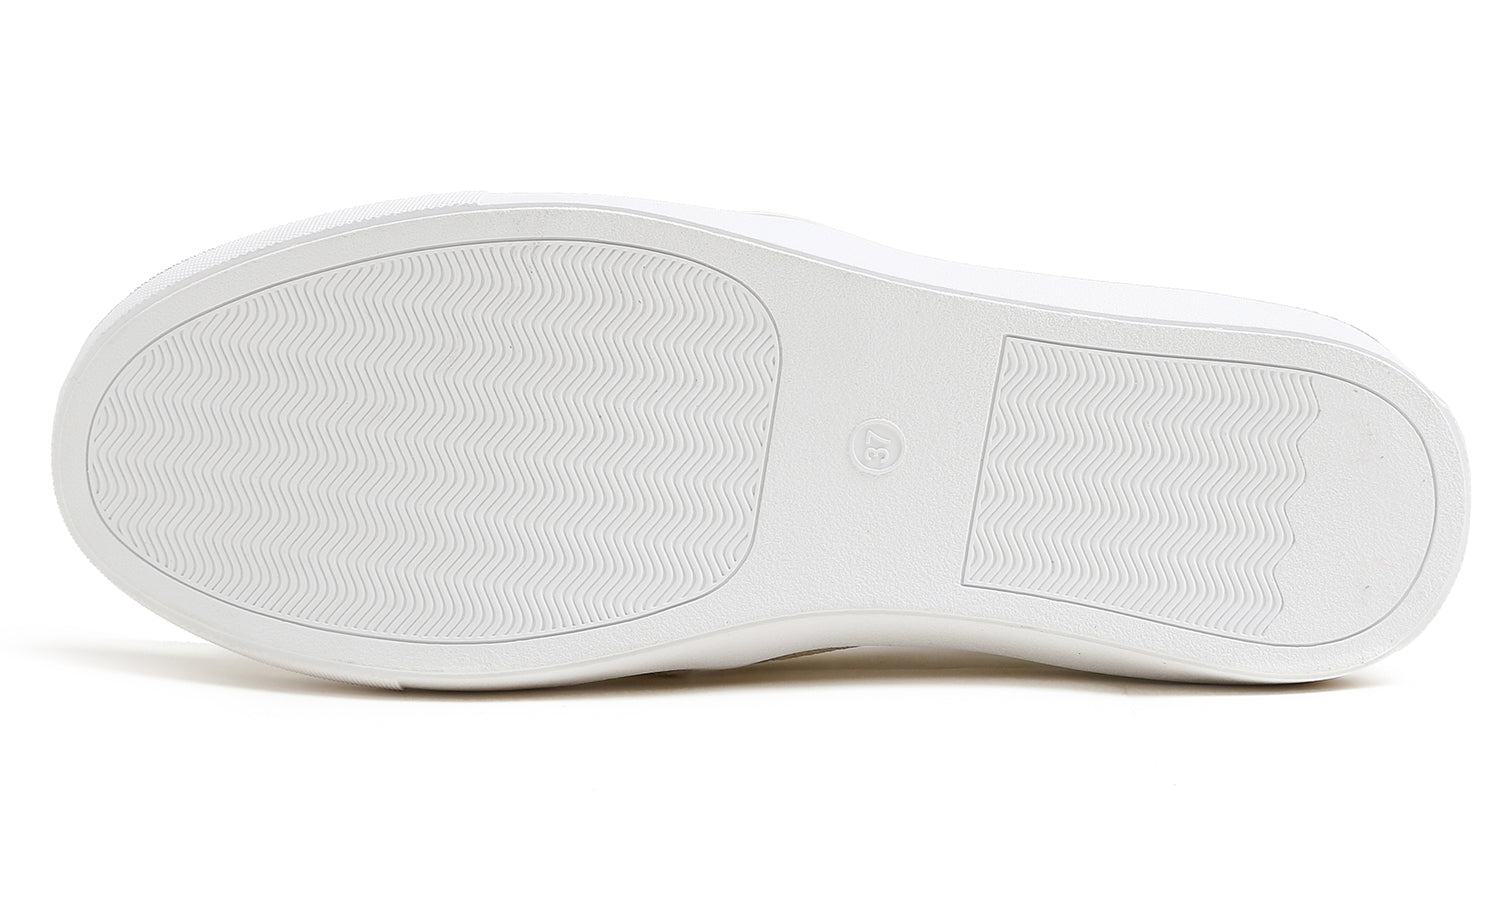 Feversole Women's Glitter White Slip On Sneaker Casual Flat Loafers